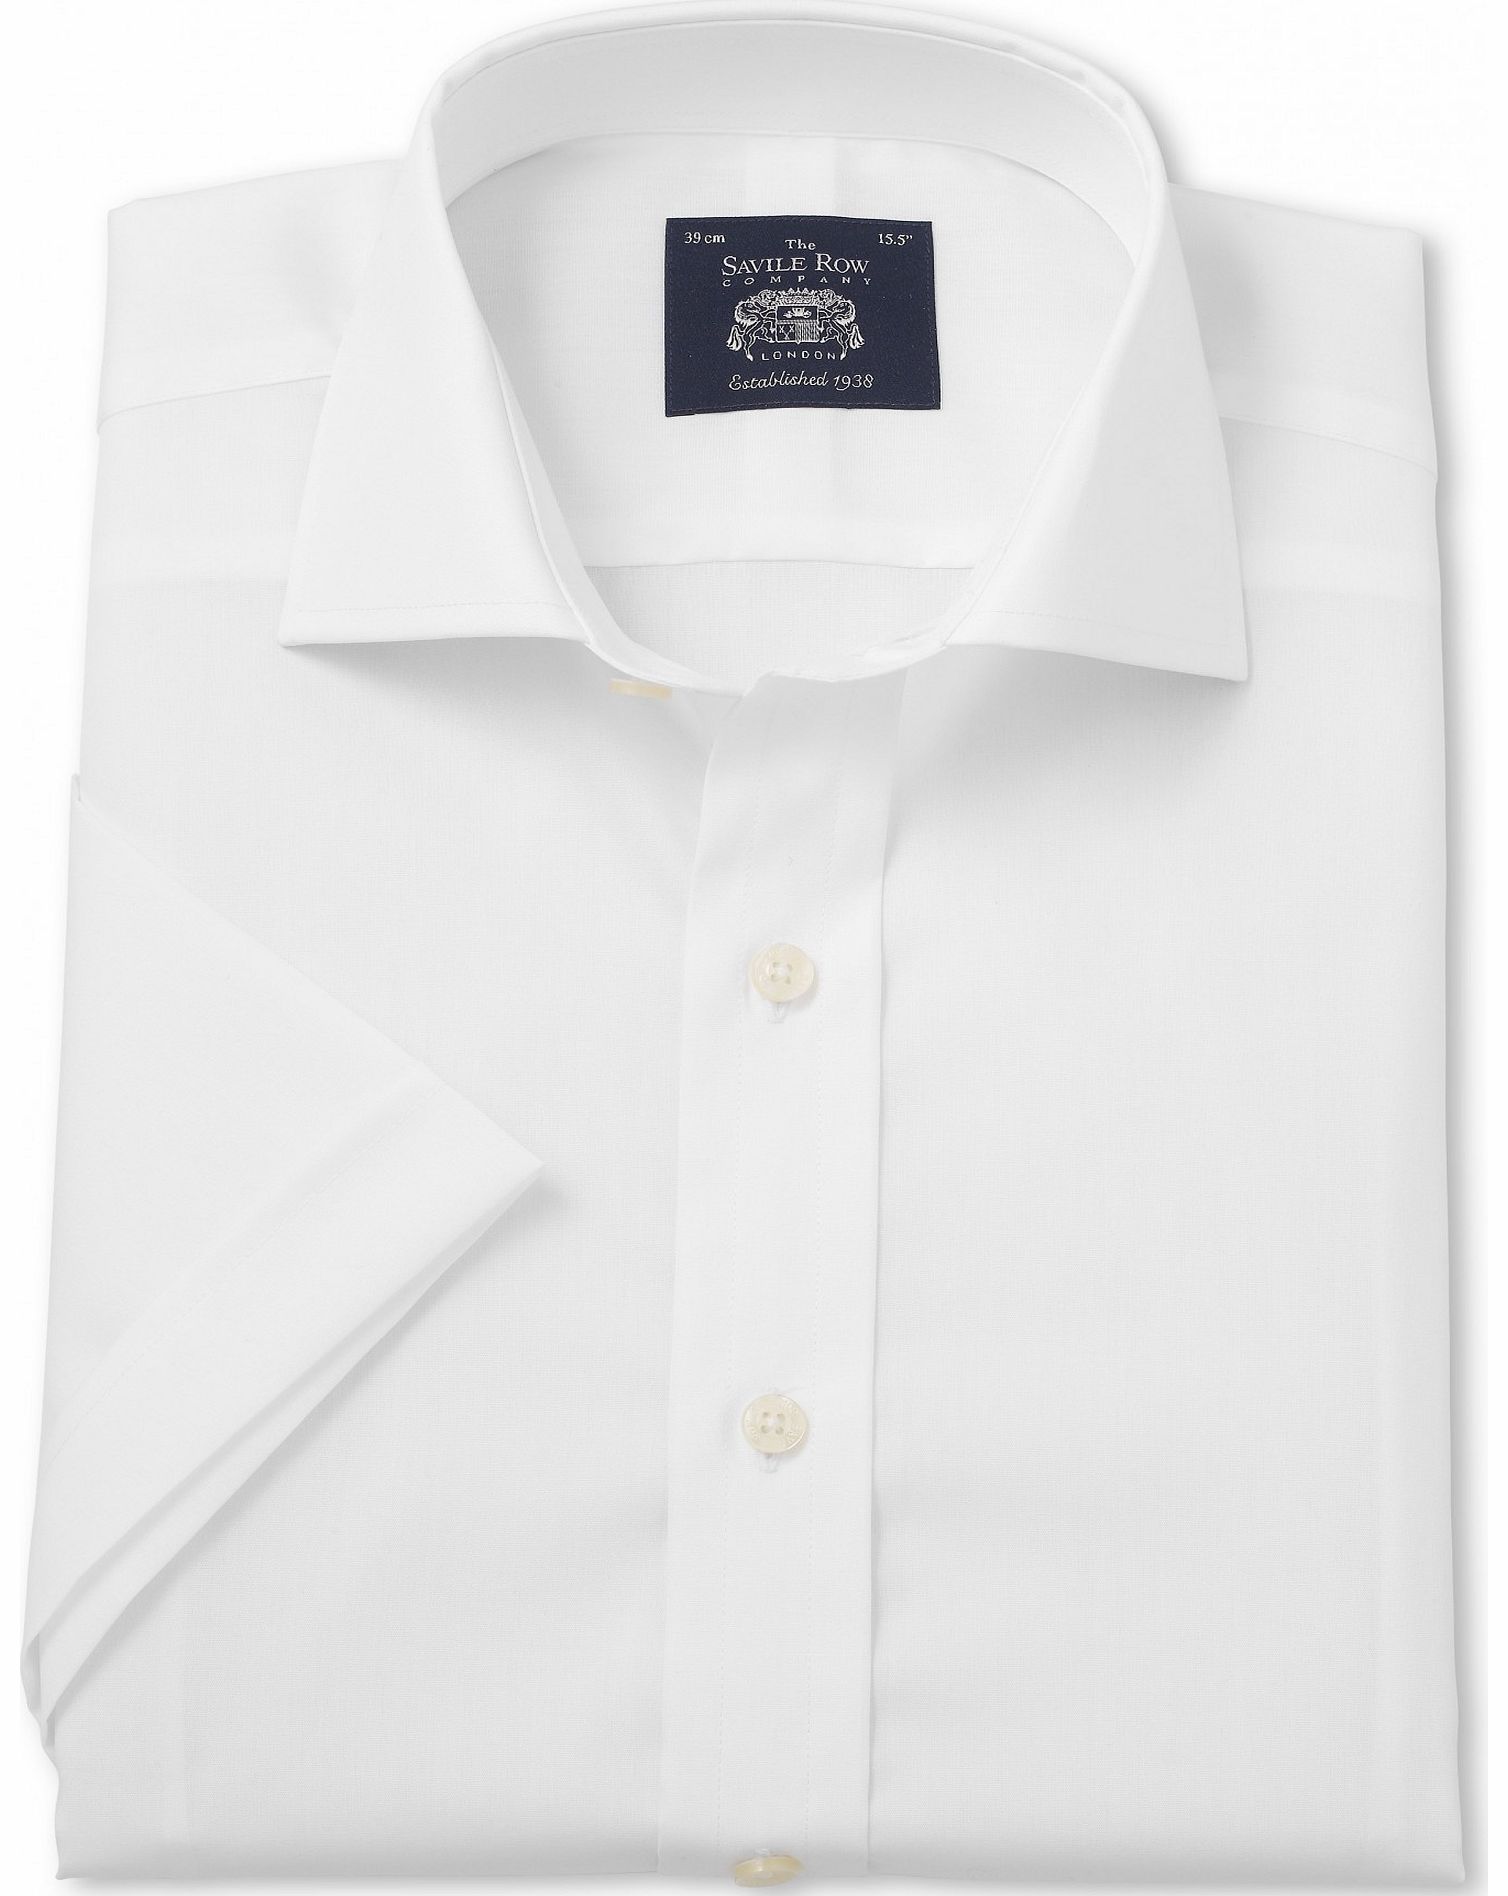 Savile Row Company White Slim Fit Short Sleeve Shirt 15 1/2`` Short